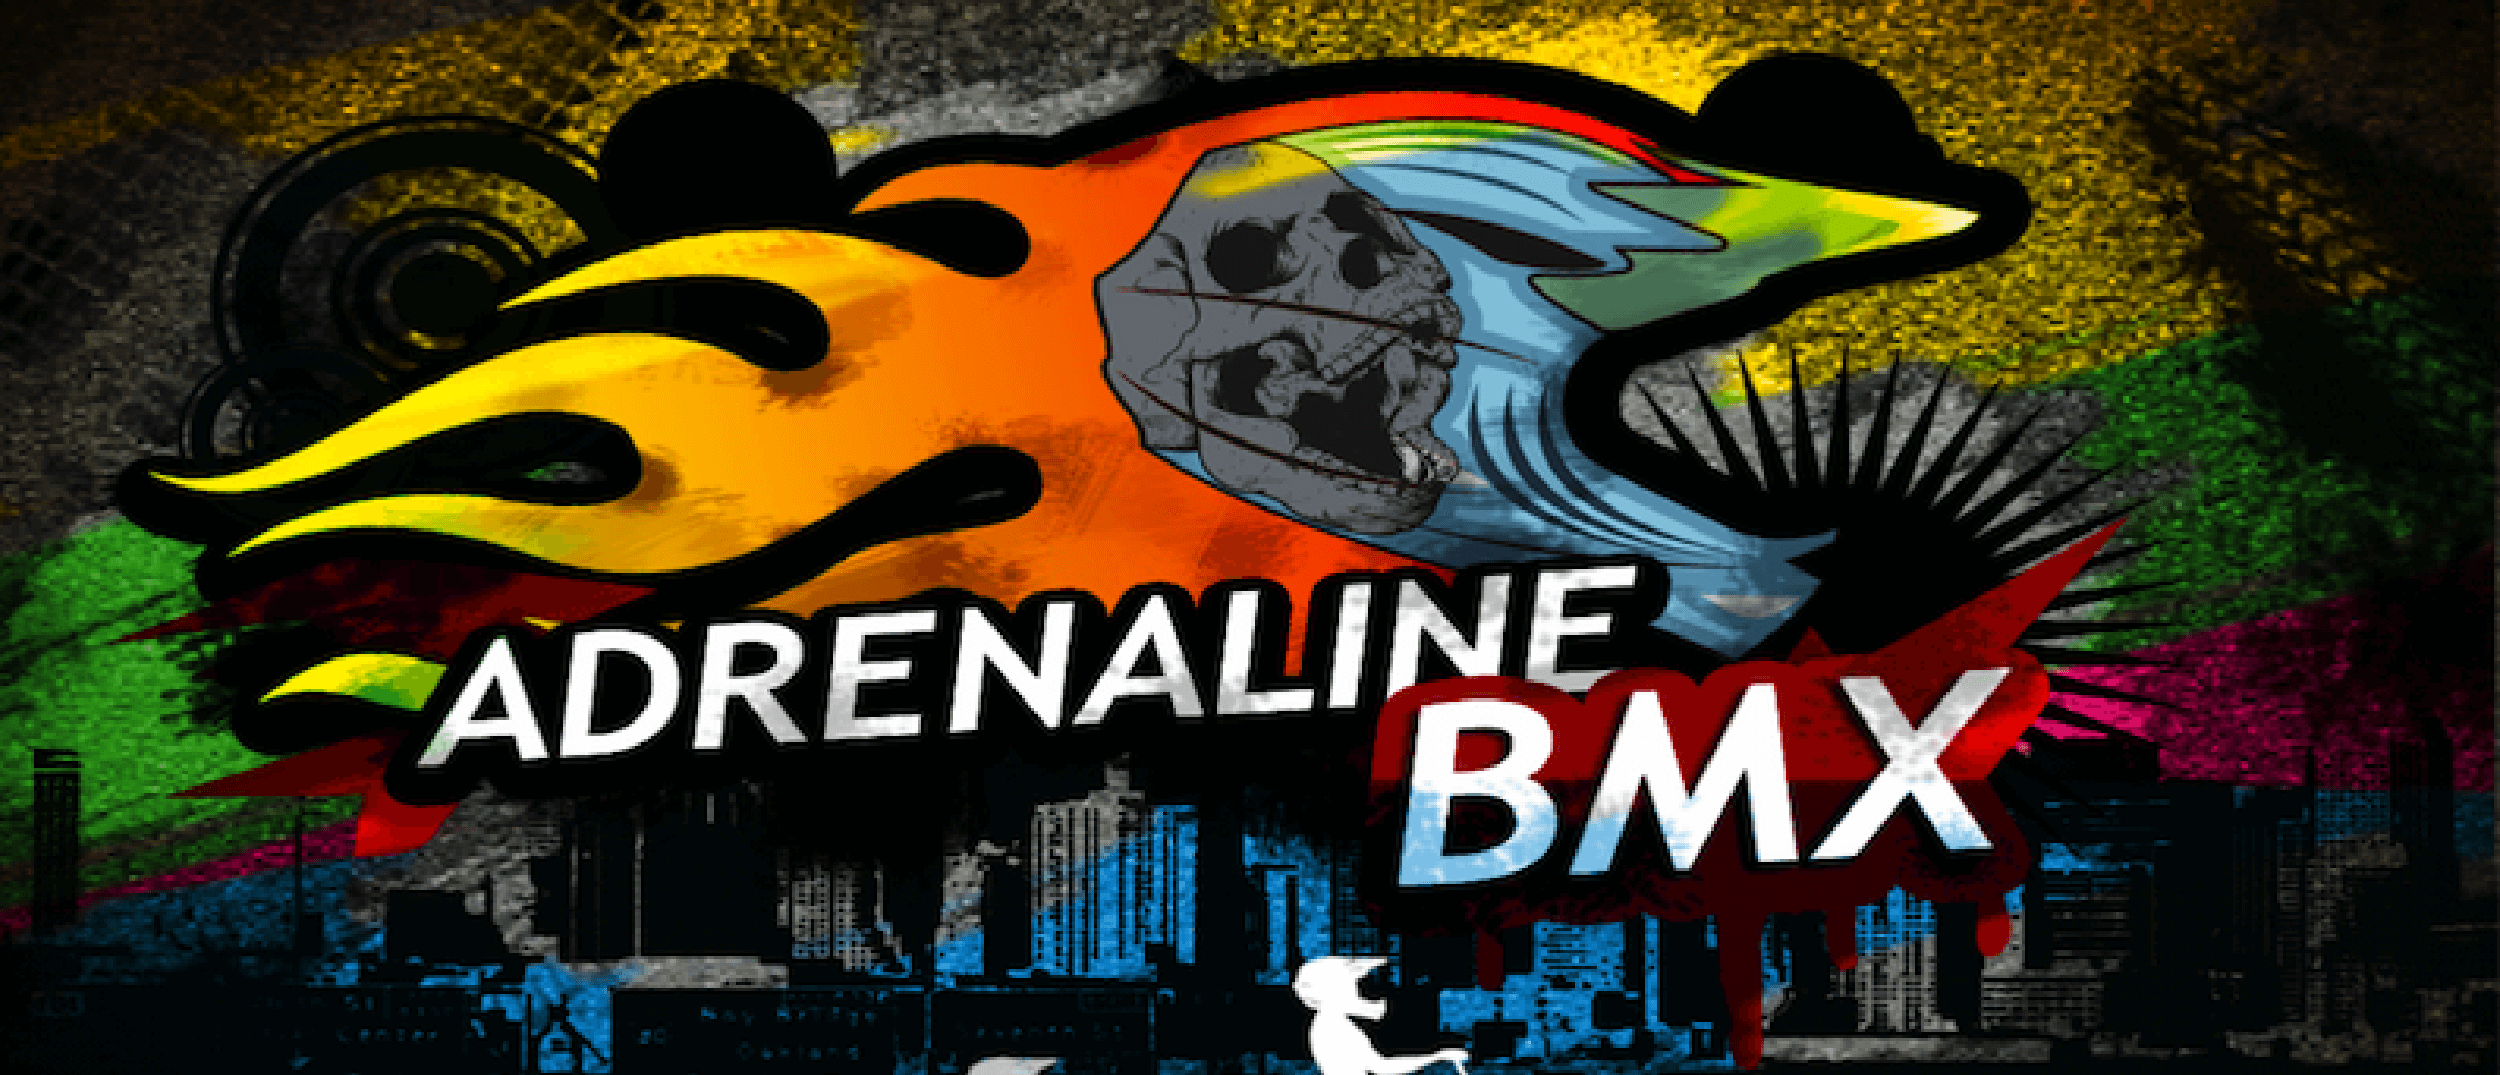 Adrenaline BMX